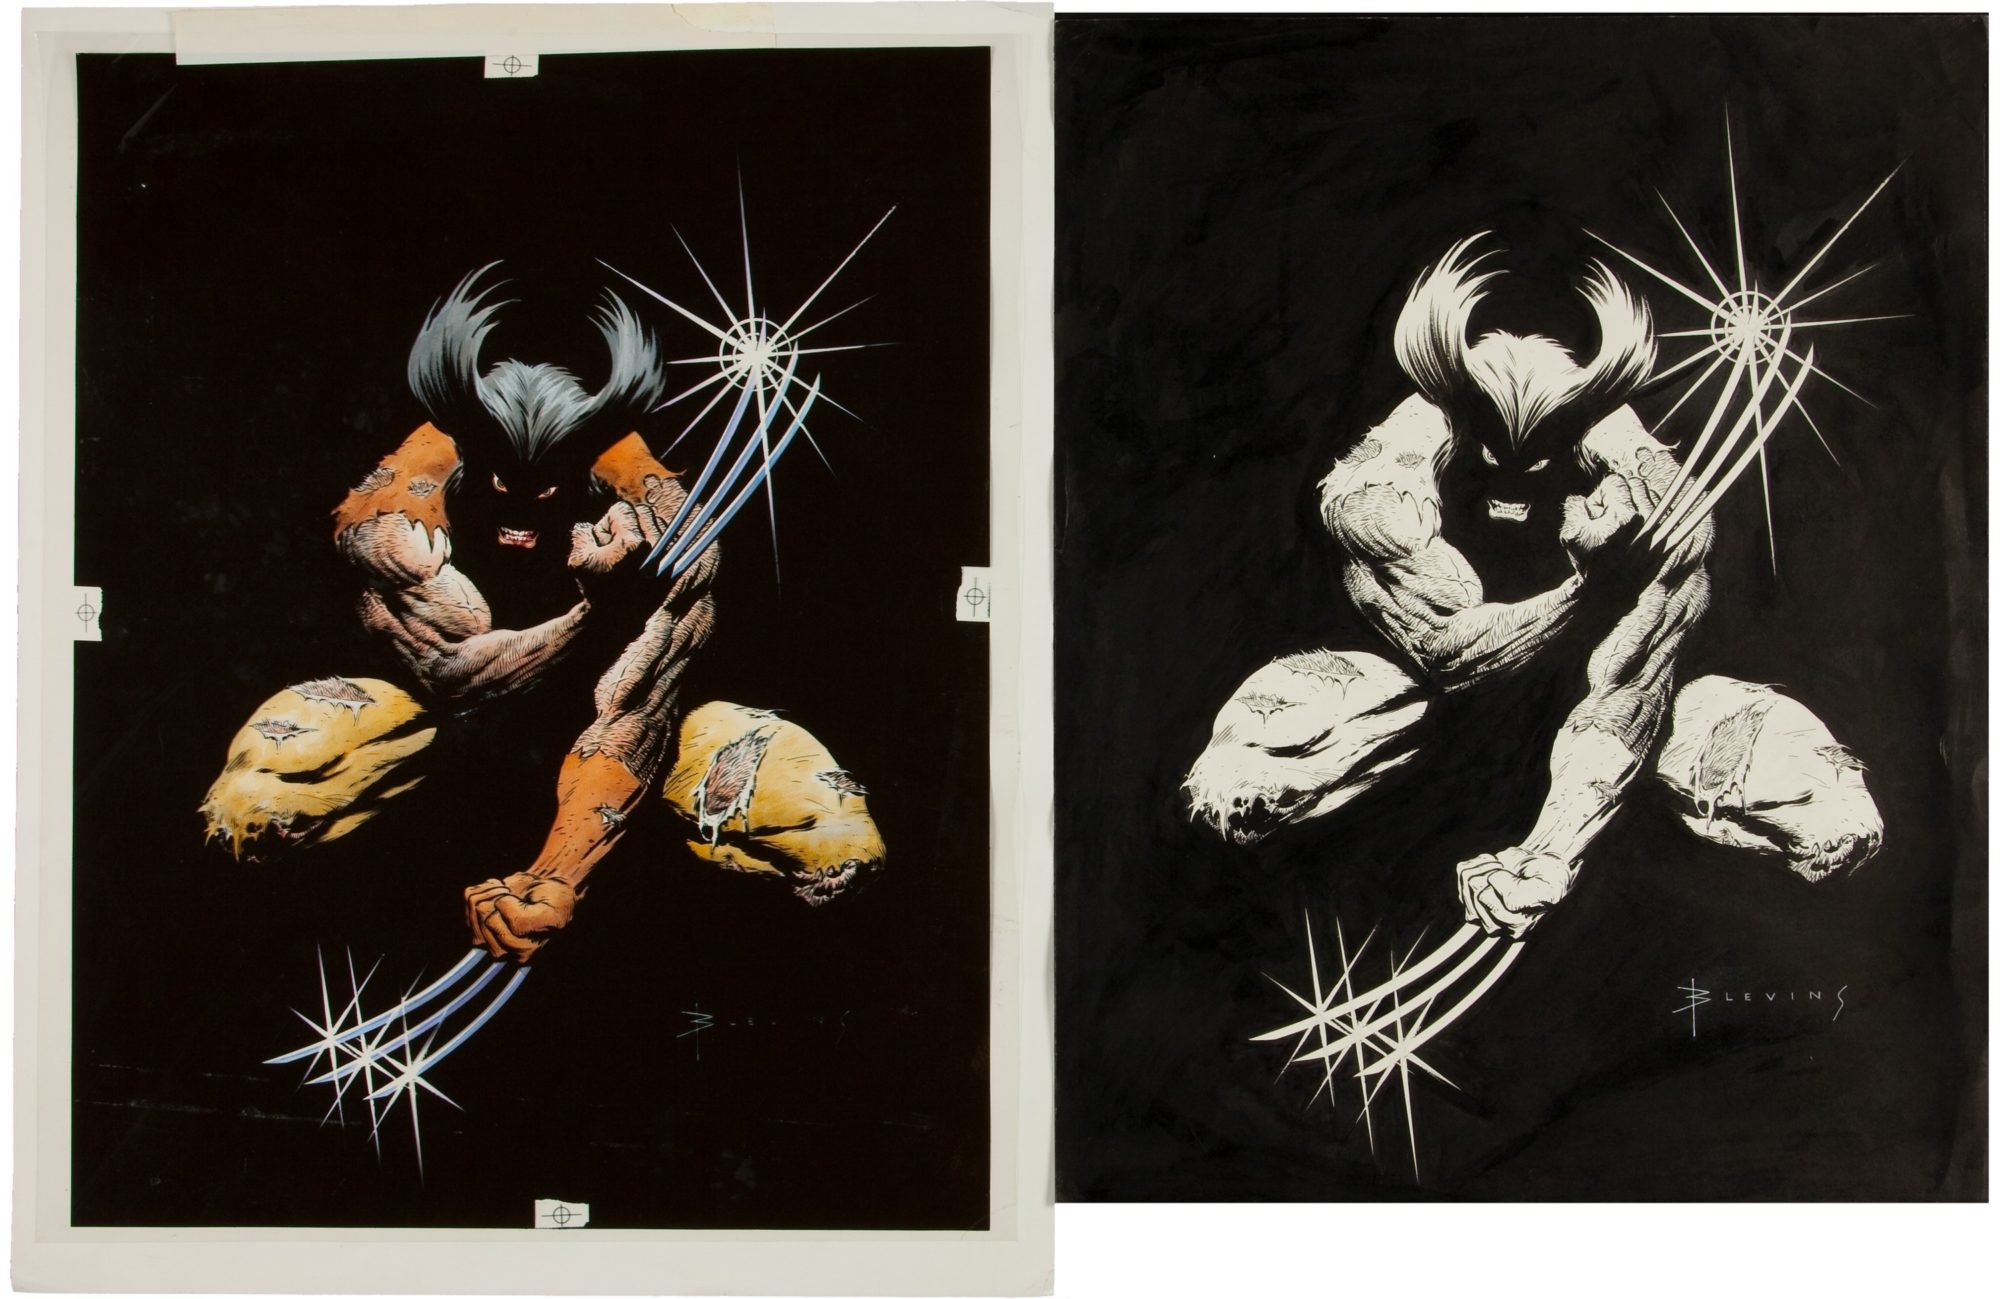 Bret Blevins Wolverine drawing